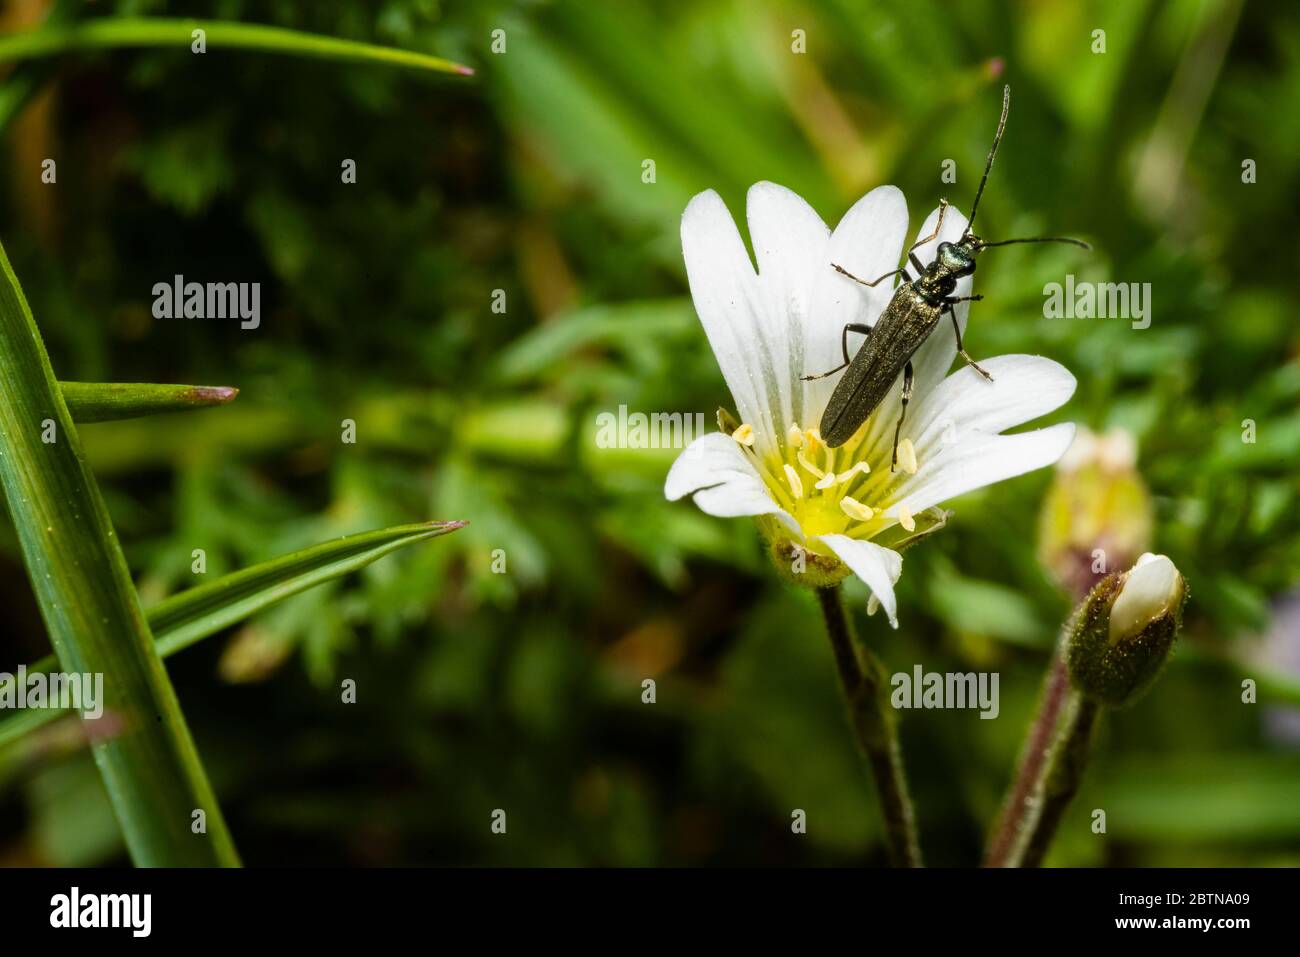 Un pequeño escarabajo de cuerno largo se sienta sobre una flor blanca, foto macro Foto de stock